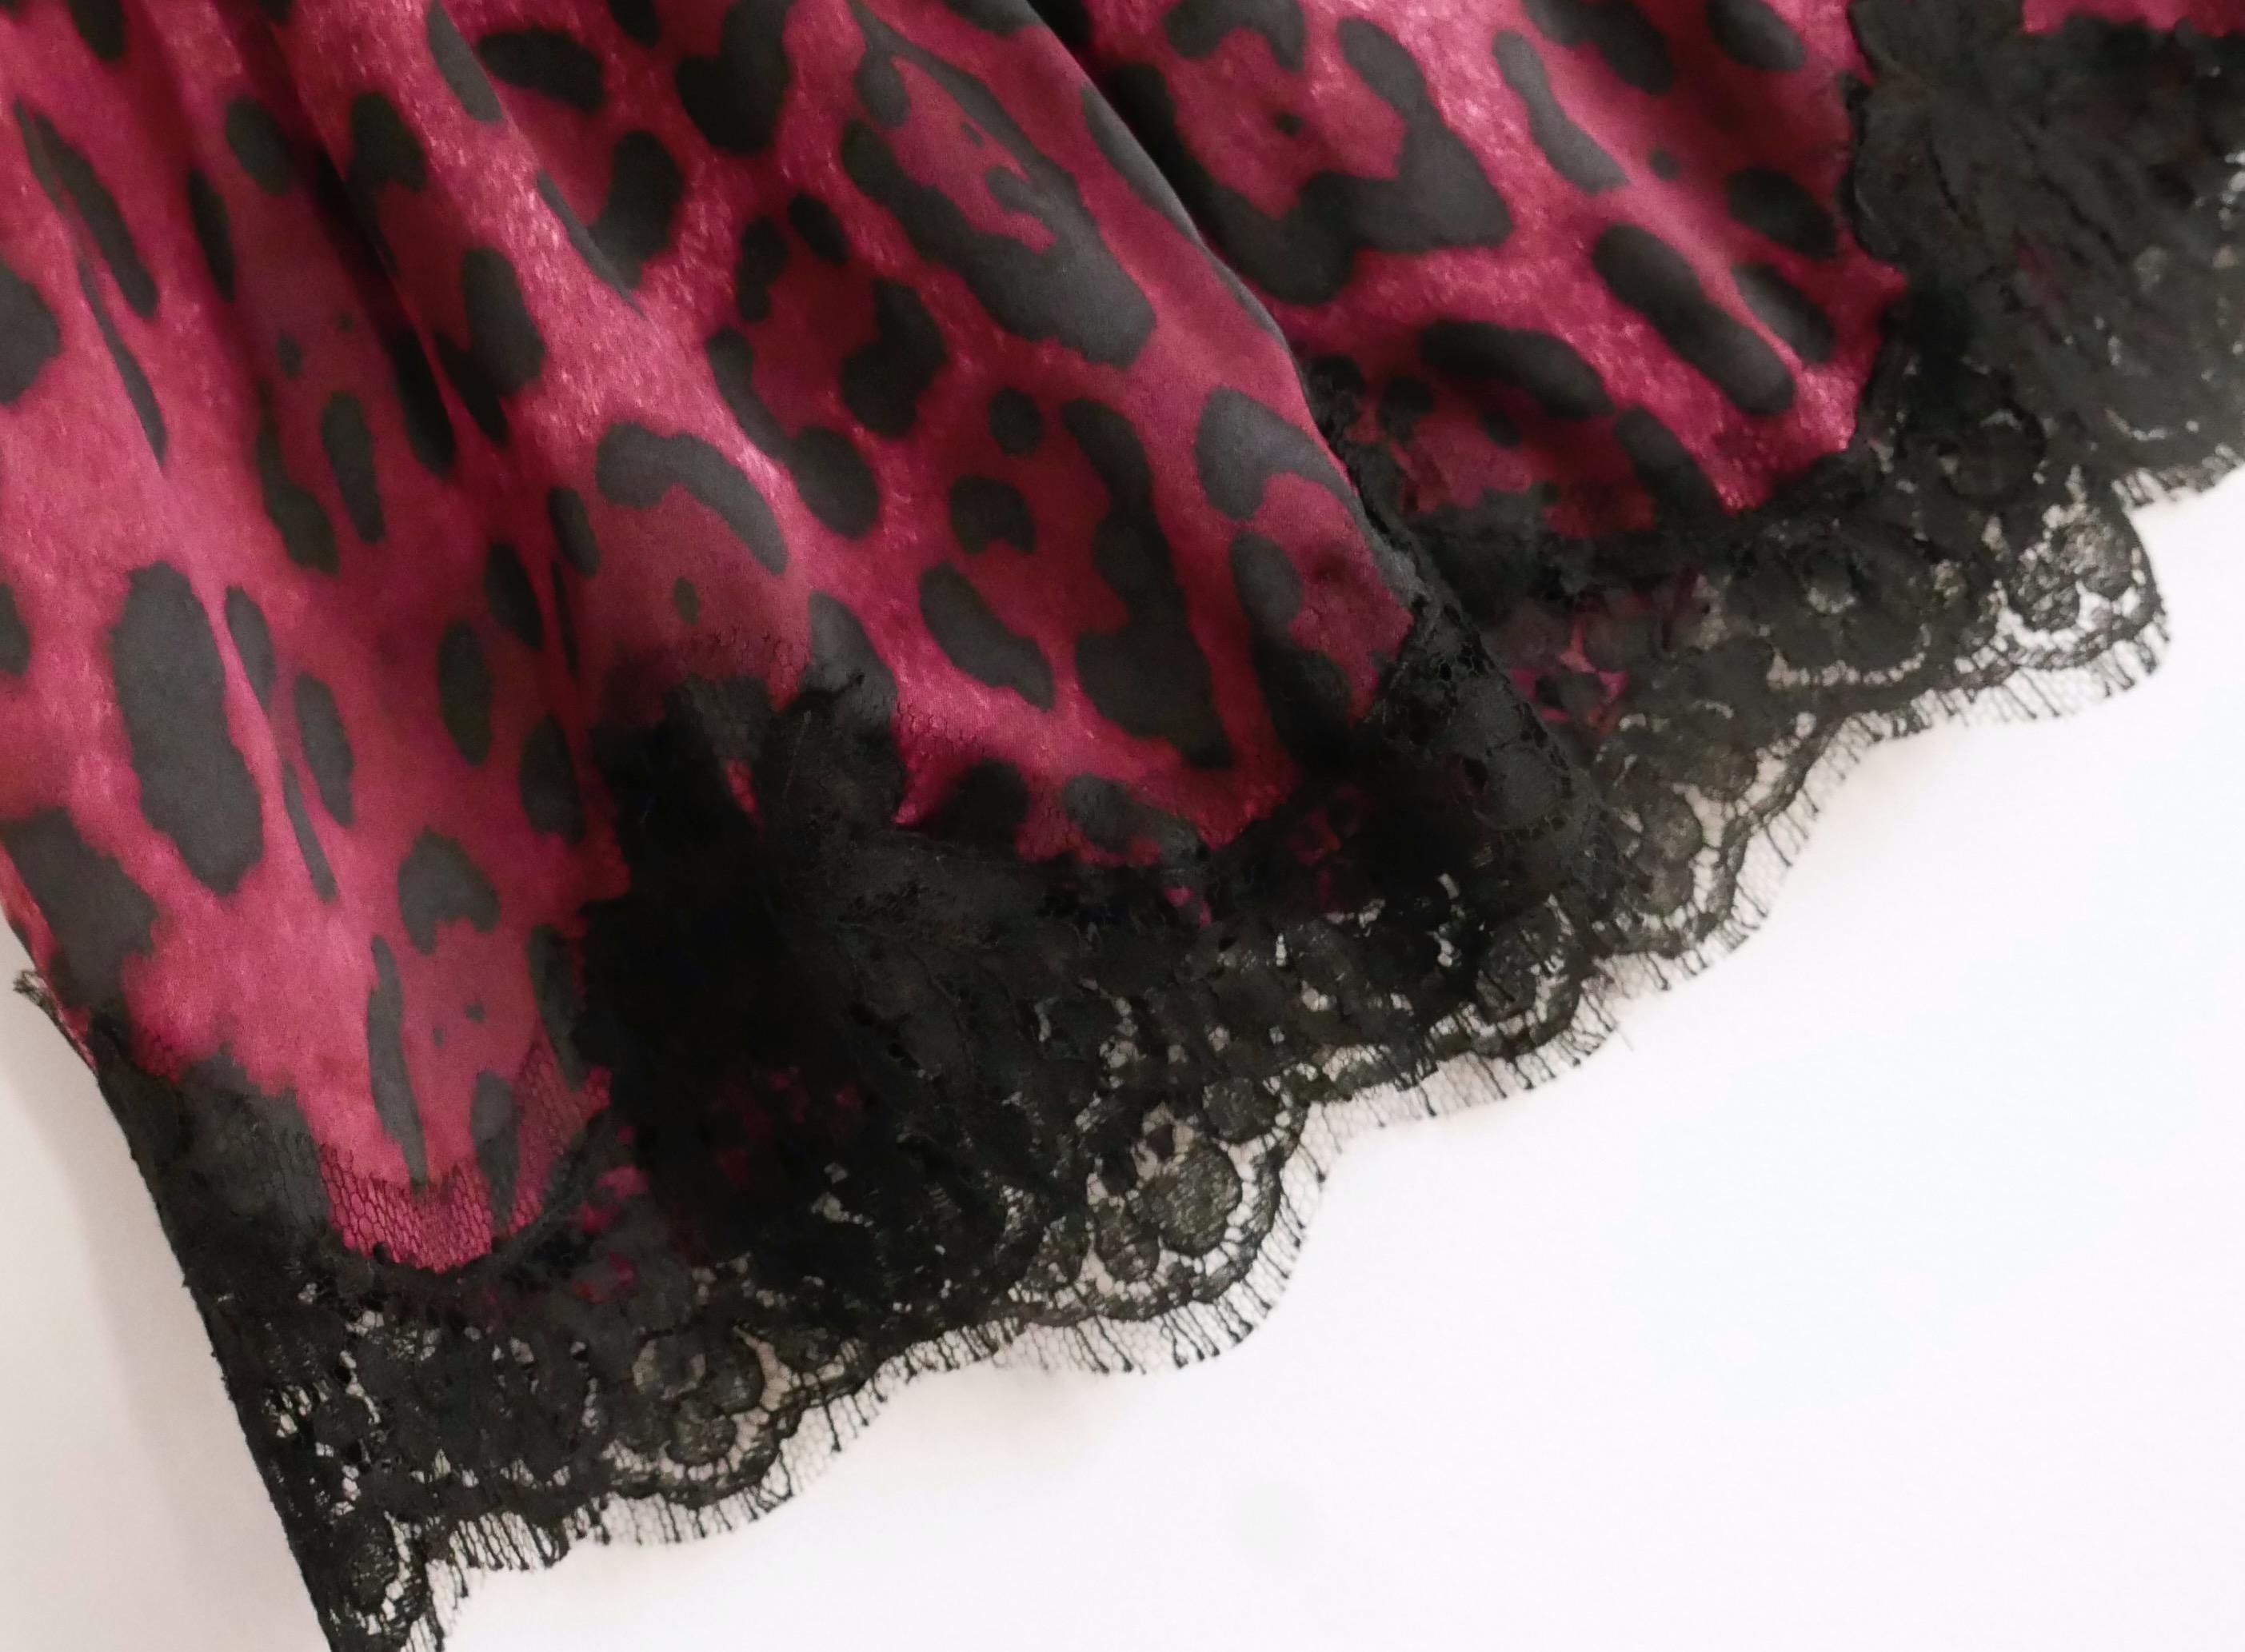 Mini jupe Dolce & Gabbana mignonne et sexy. Achetée pour £500 et neuve avec les étiquettes. 
Confectionné en soie mélangée extensible super douce à imprimé léopard rouge bordeaux, avec un délicat ourlet en dentelle noire. 
Coupe courte et évasée,